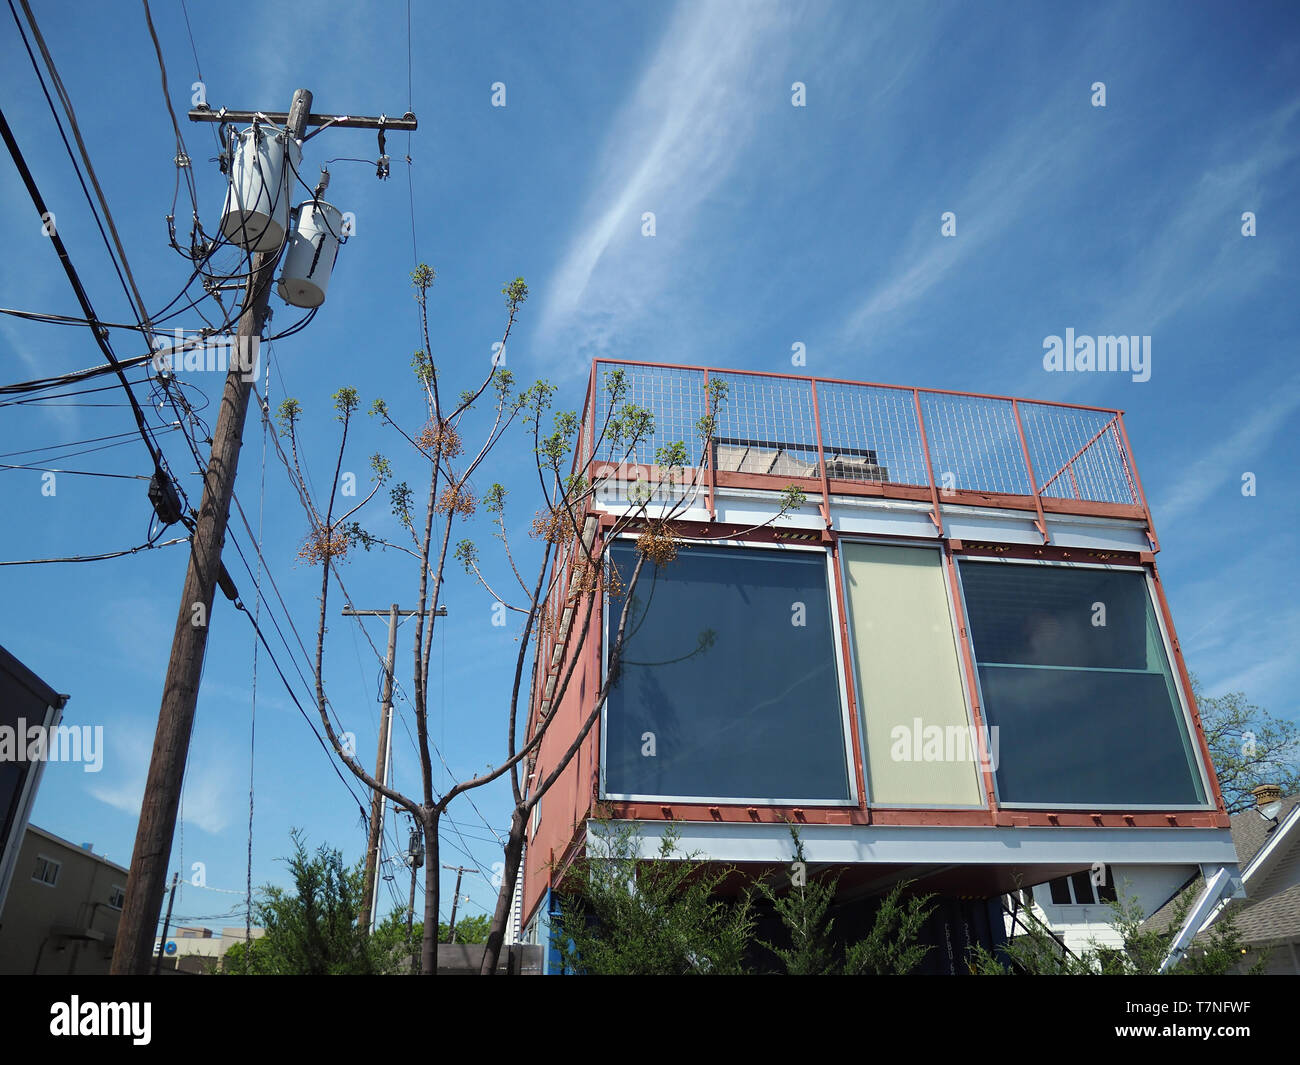 Neben alten Mitte des Jahrhunderts Holz eine recycelte Container steigt in der Innenstadt von Fort Worth, Texas. Alle metl einen Tornado zu widerstehen, Deck oben gibt den Blick auf die Skyline. Stockfoto